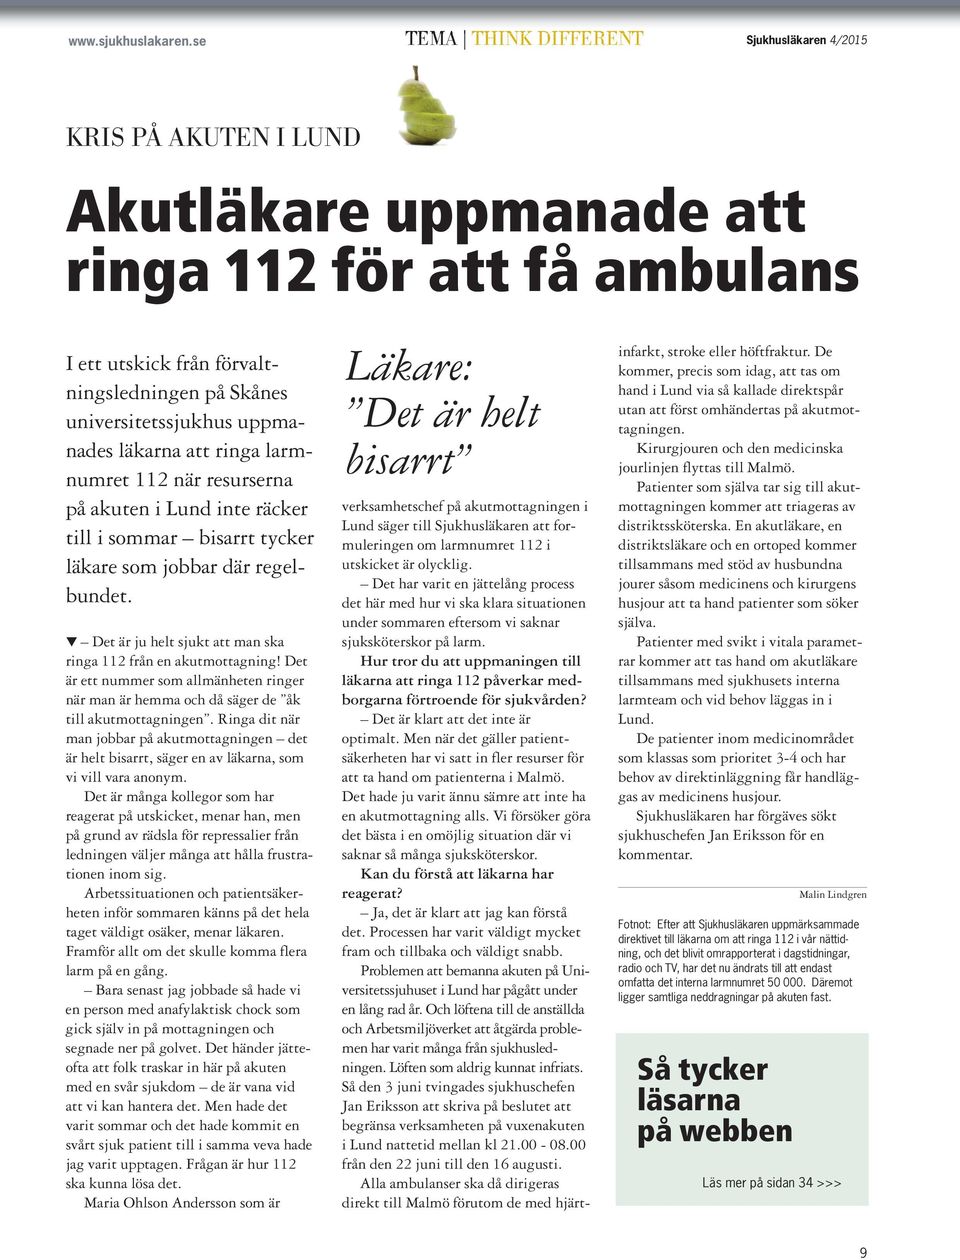 uppmanades läkarna att ringa larmnumret 112 när resurserna på akuten i Lund inte räcker till i sommar bisarrt tycker läkare som jobbar där regelbundet.